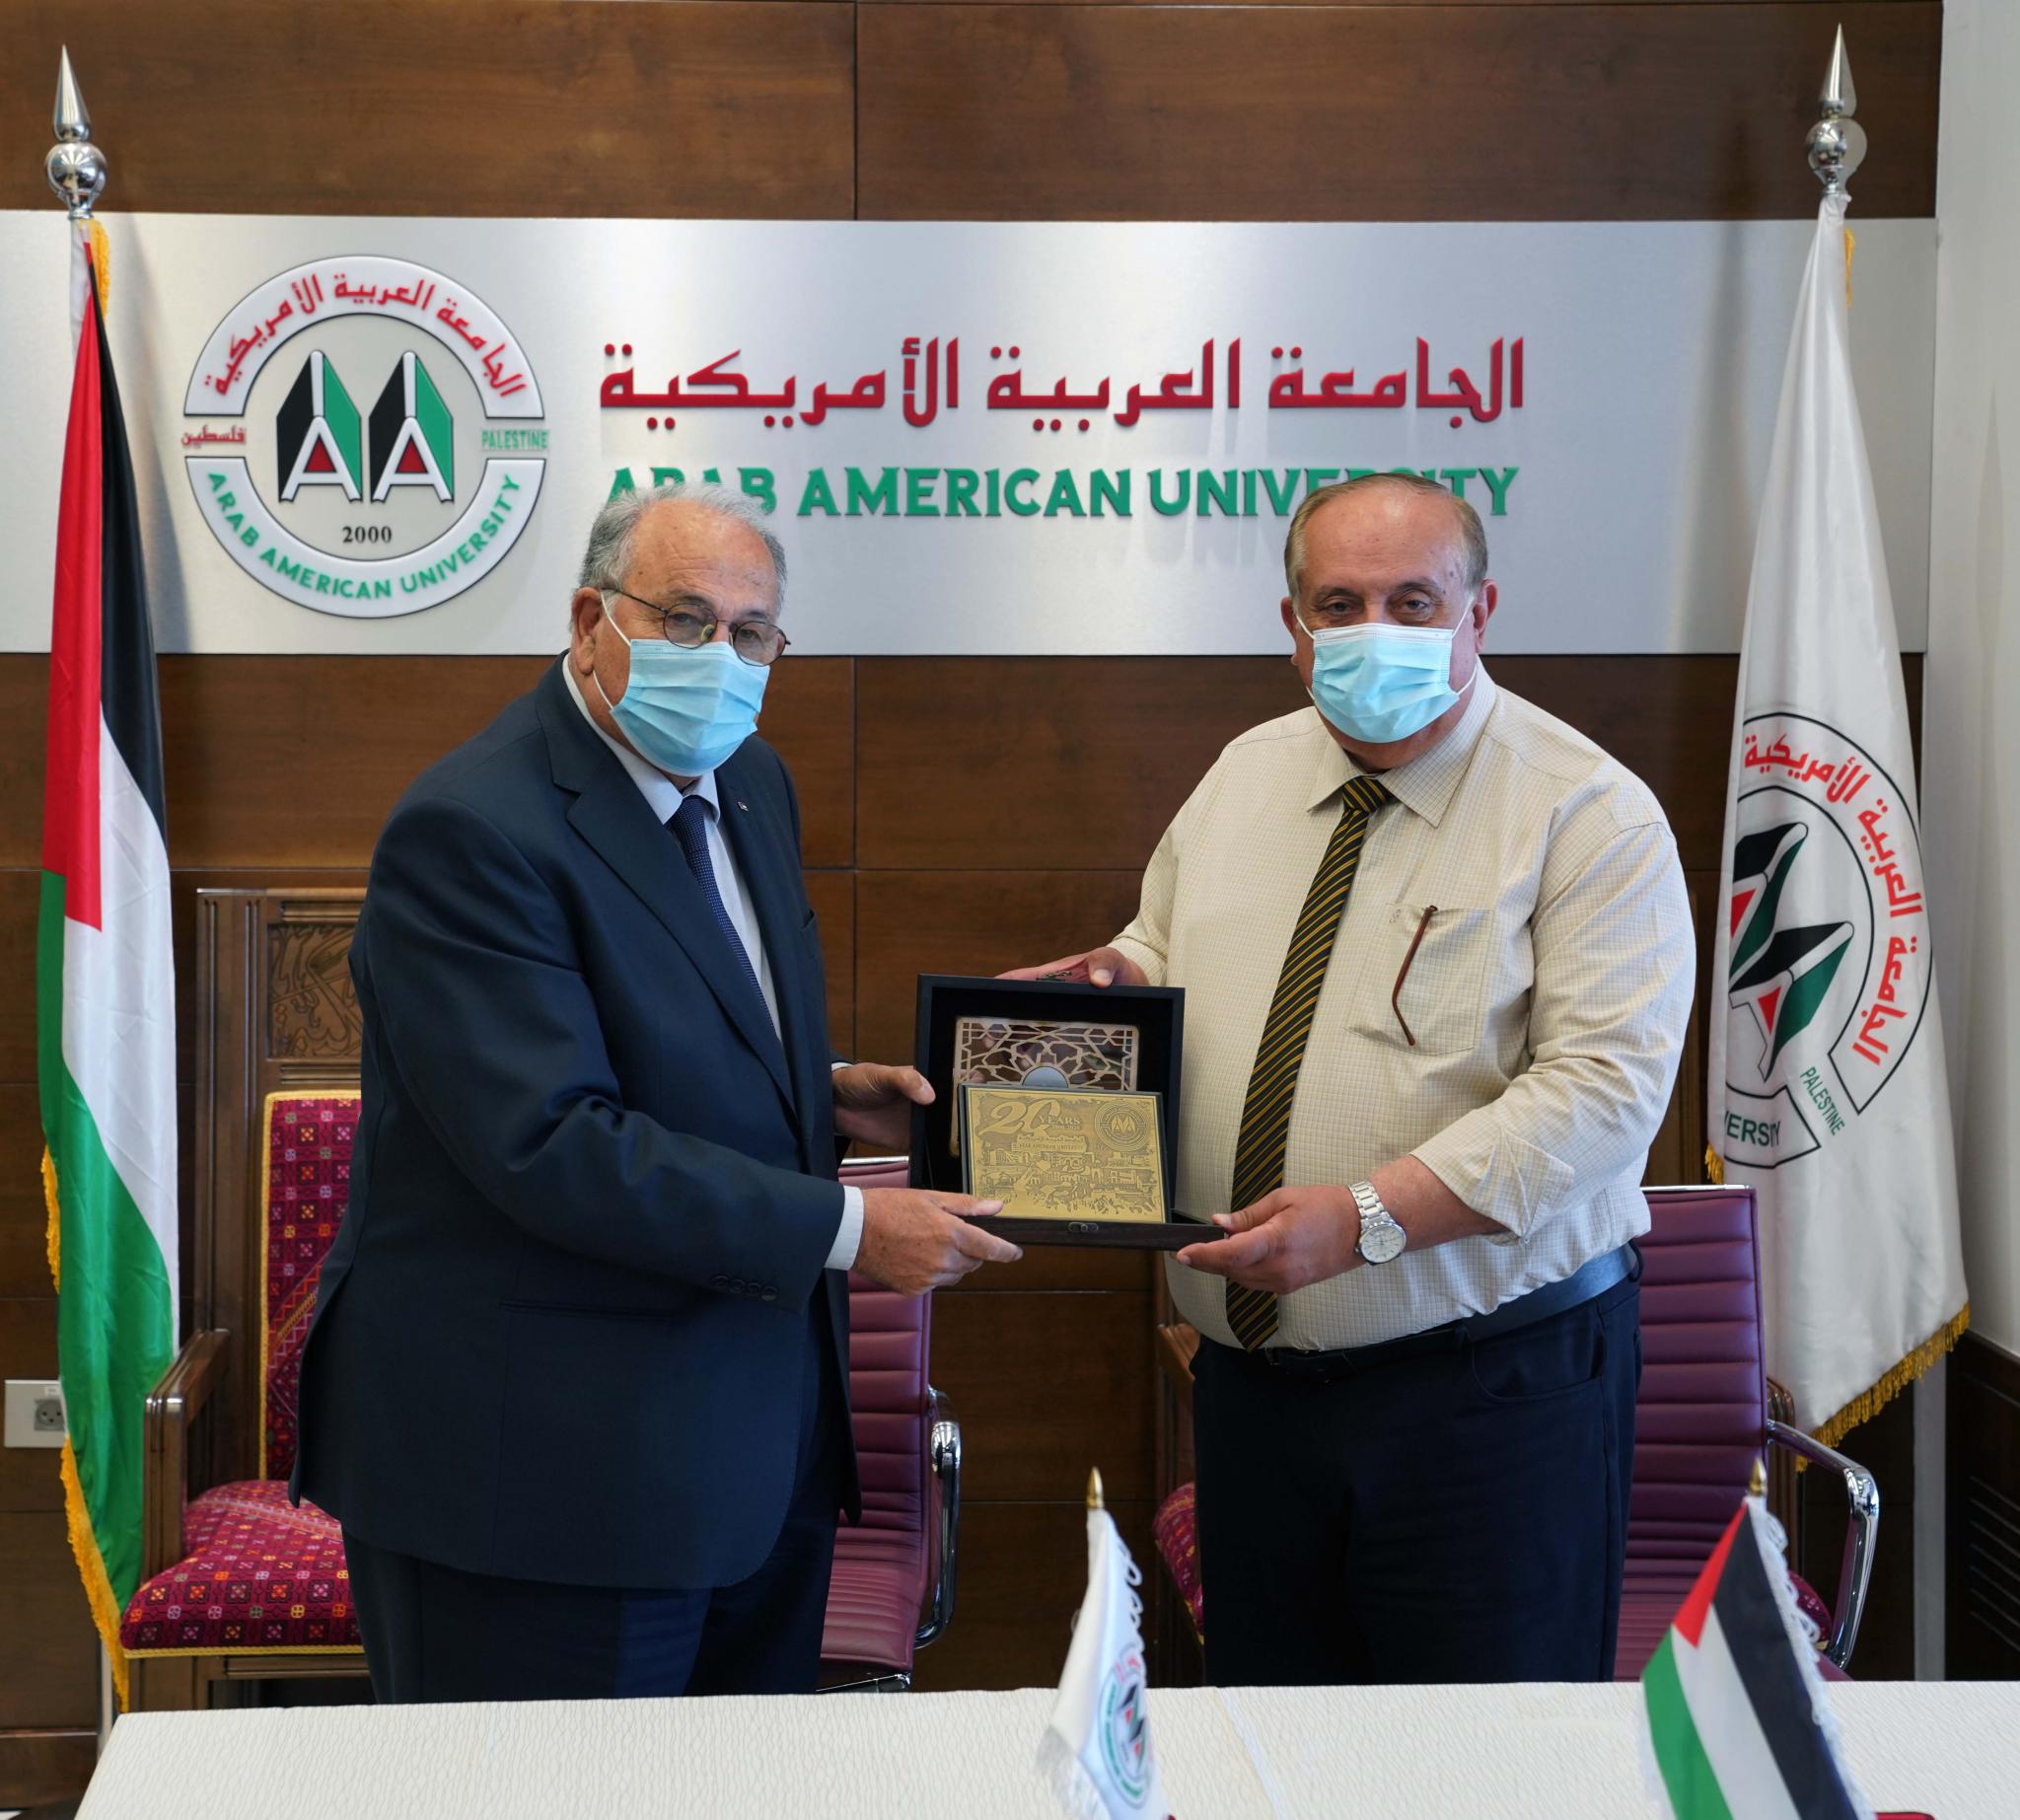 توقيع اتفاقية تعاون بين الجامعة والجهاز المركزي للإحصاء الفلسطيني لإطلاق برنامج البكالوريوس في تخصص "الإحصاء وعلم البيانات"